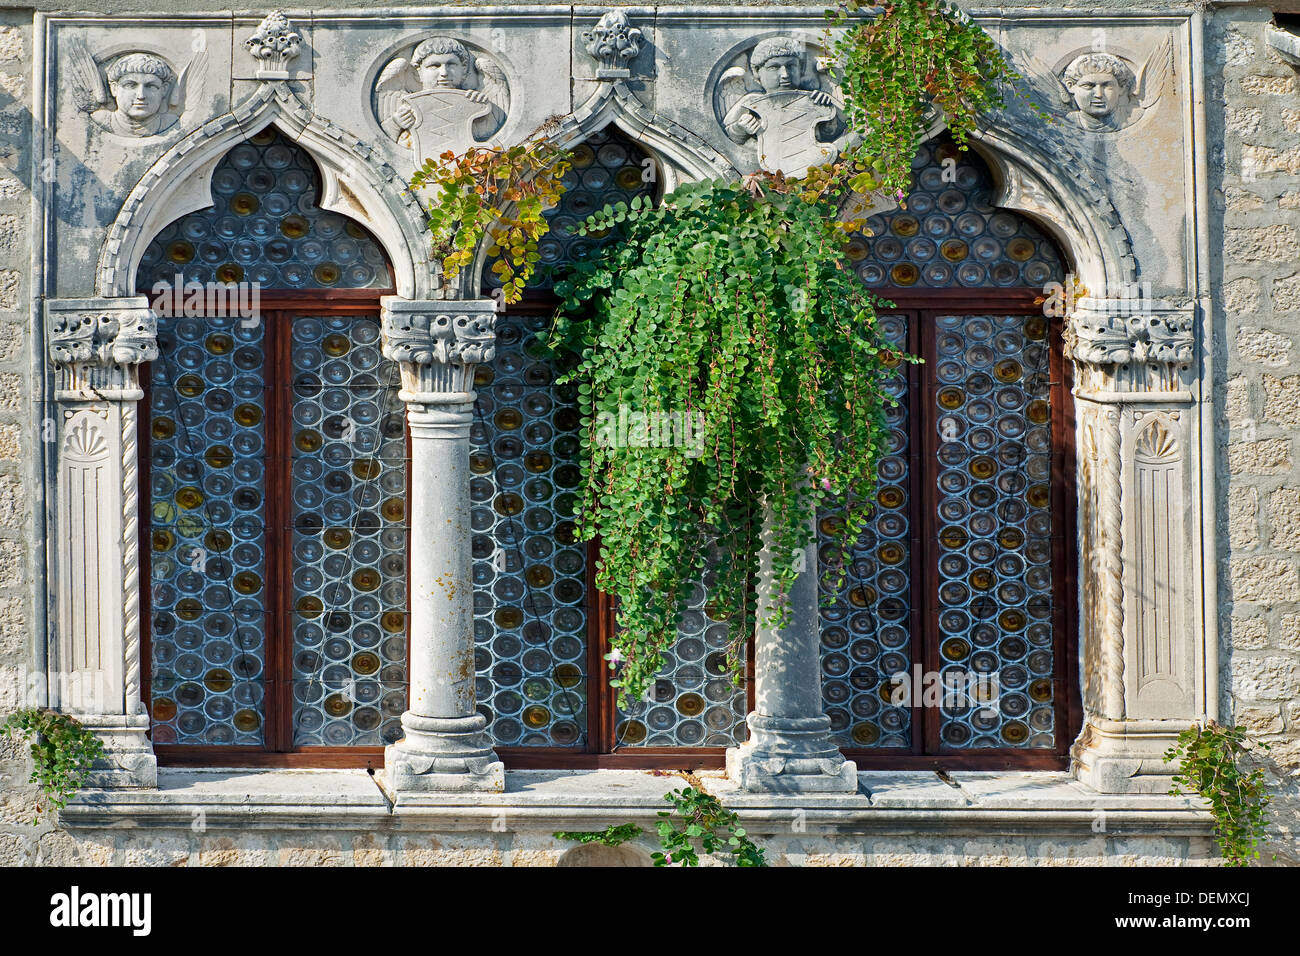 Finestra, centro storico sono classificati come patrimonio mondiale dall'UNESCO, la città di Trogir, costa dalmata, Dalmazia, Croazia Foto Stock